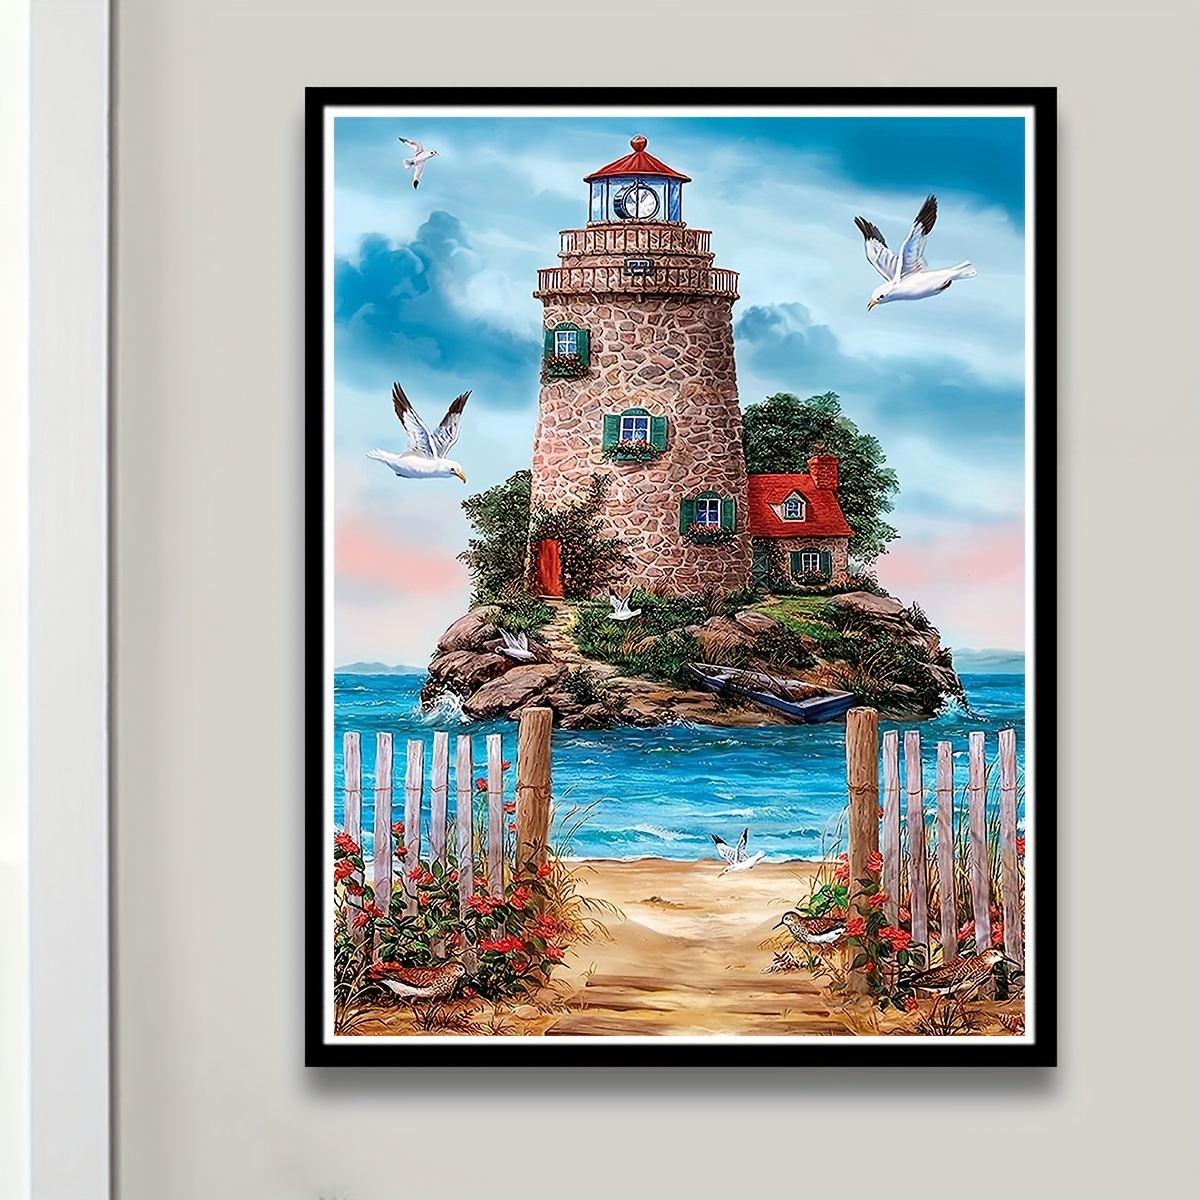 Circular Sunflower Lighthouse Scenery Diamond Painting Kits - Temu